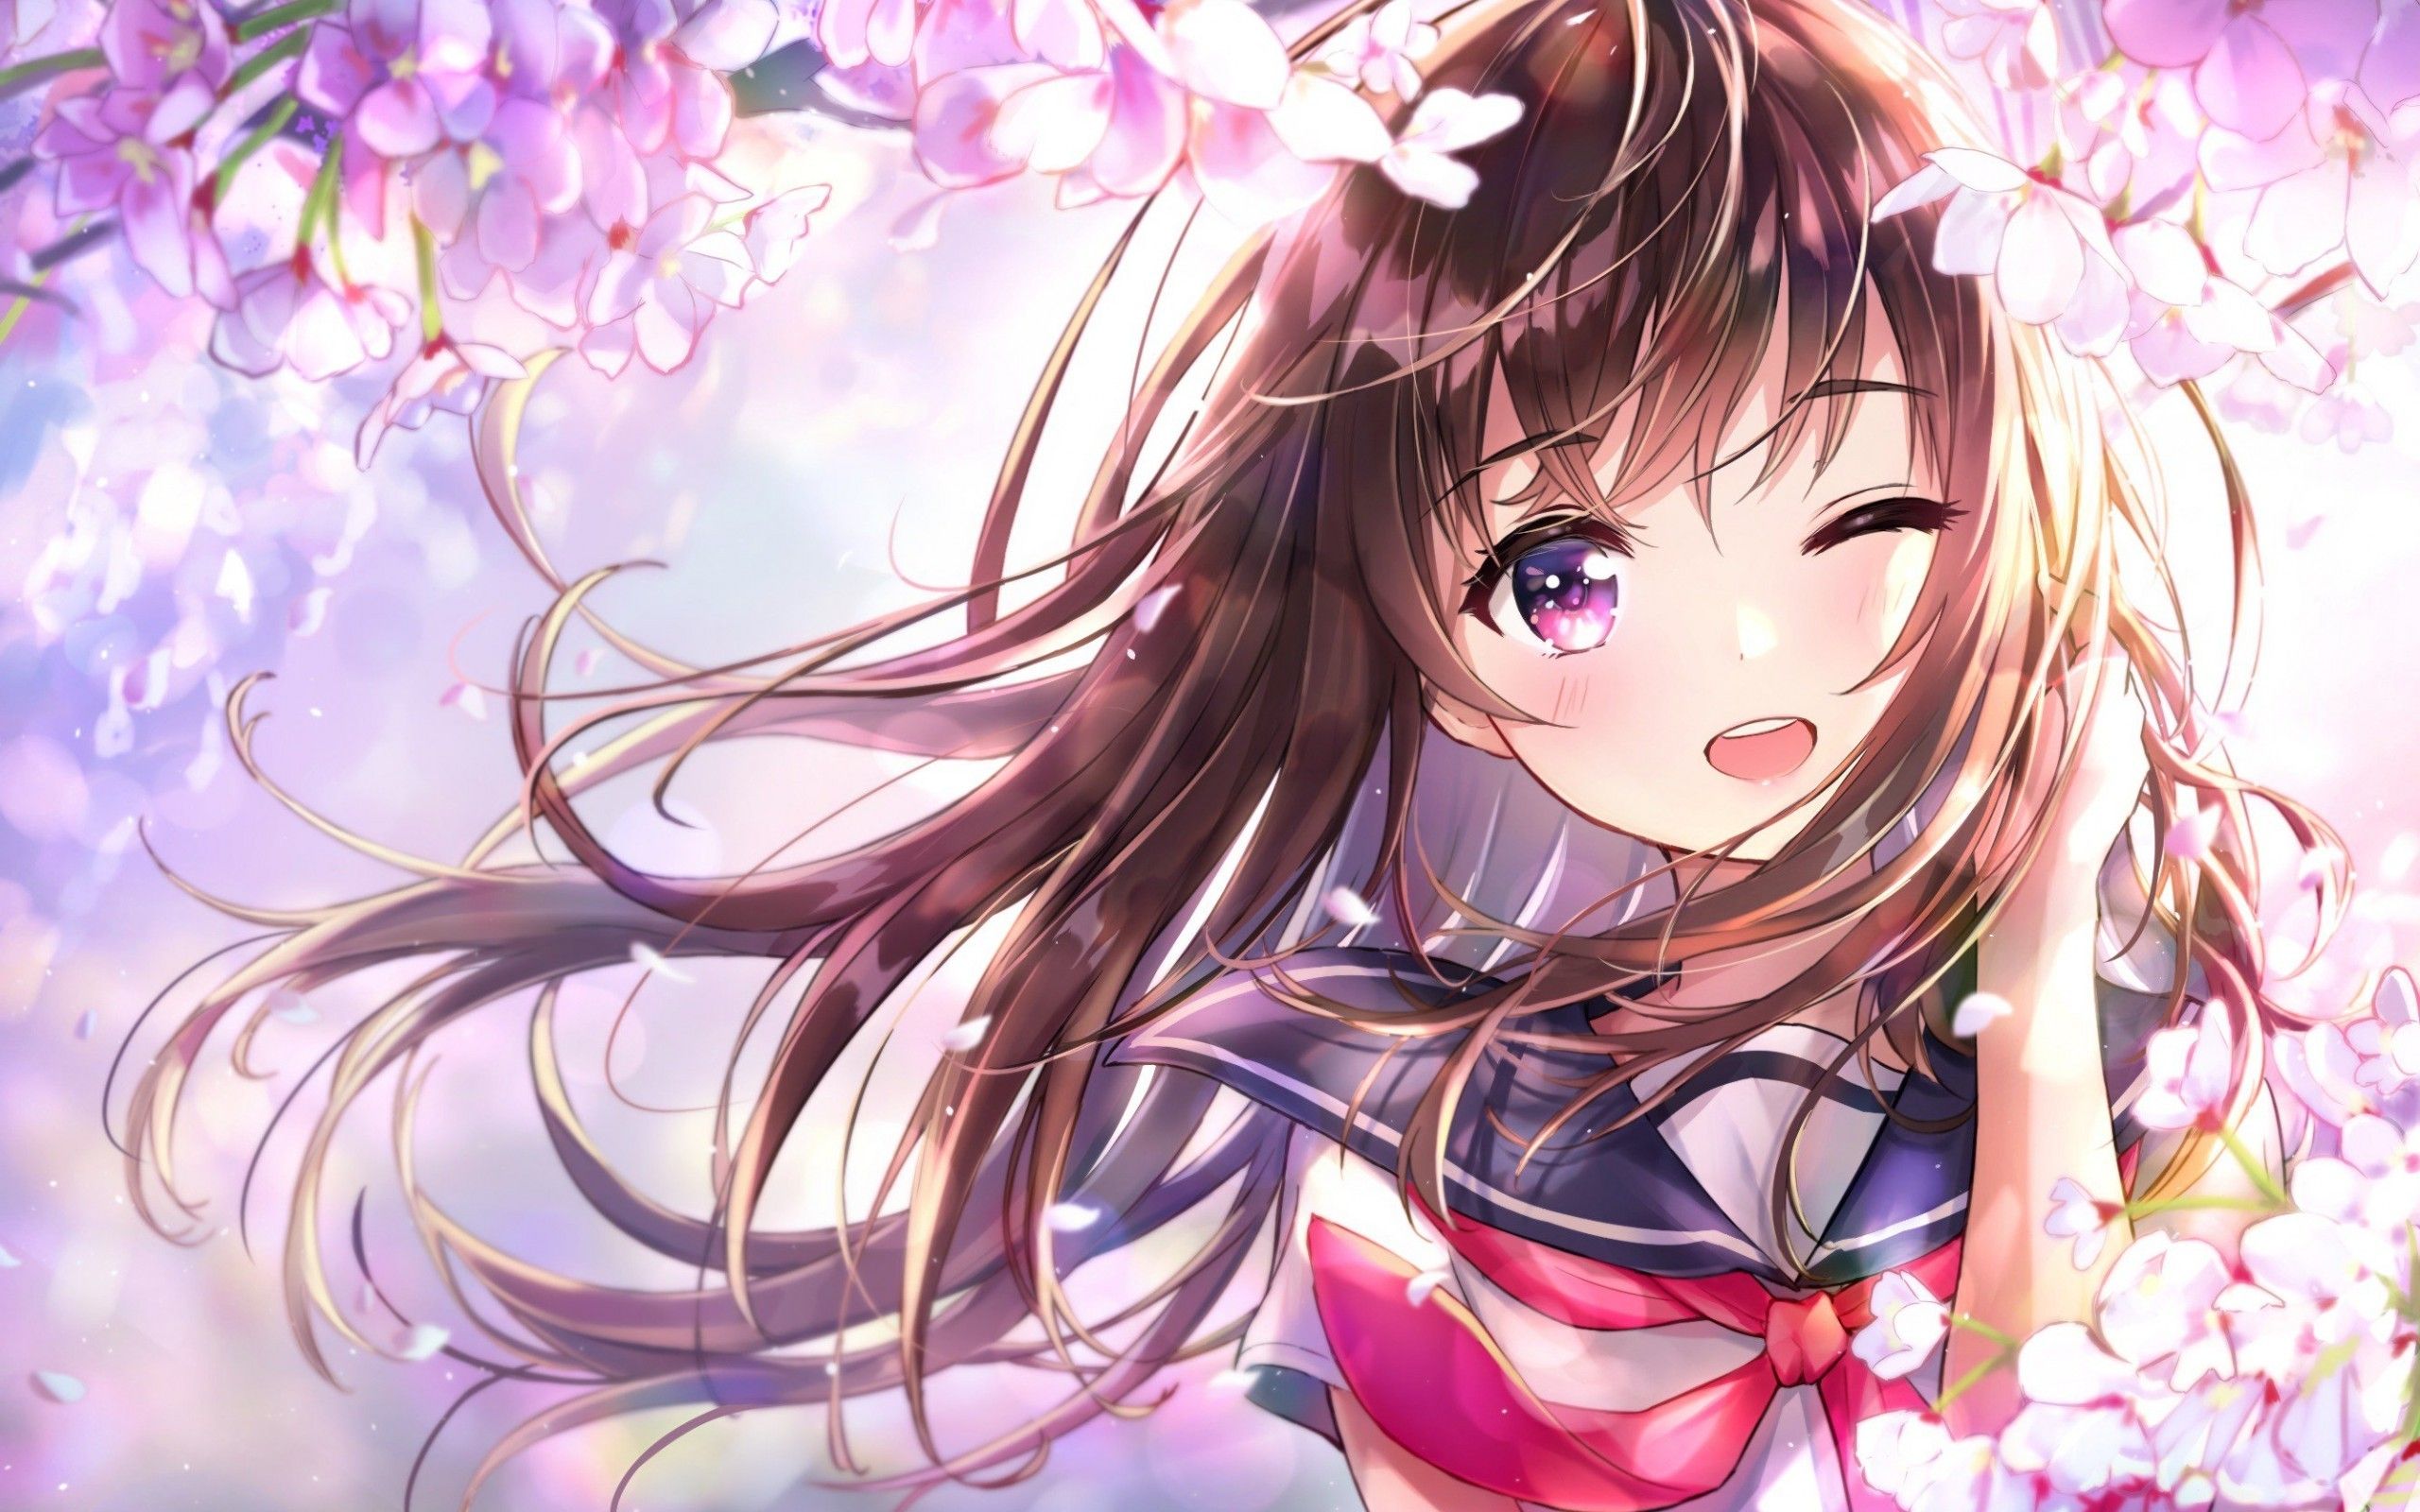 Anime 2560x1600 anime anime girls flowers cherry blossom school uniform brunette long hair purple eyes artwork Hapong07 wink